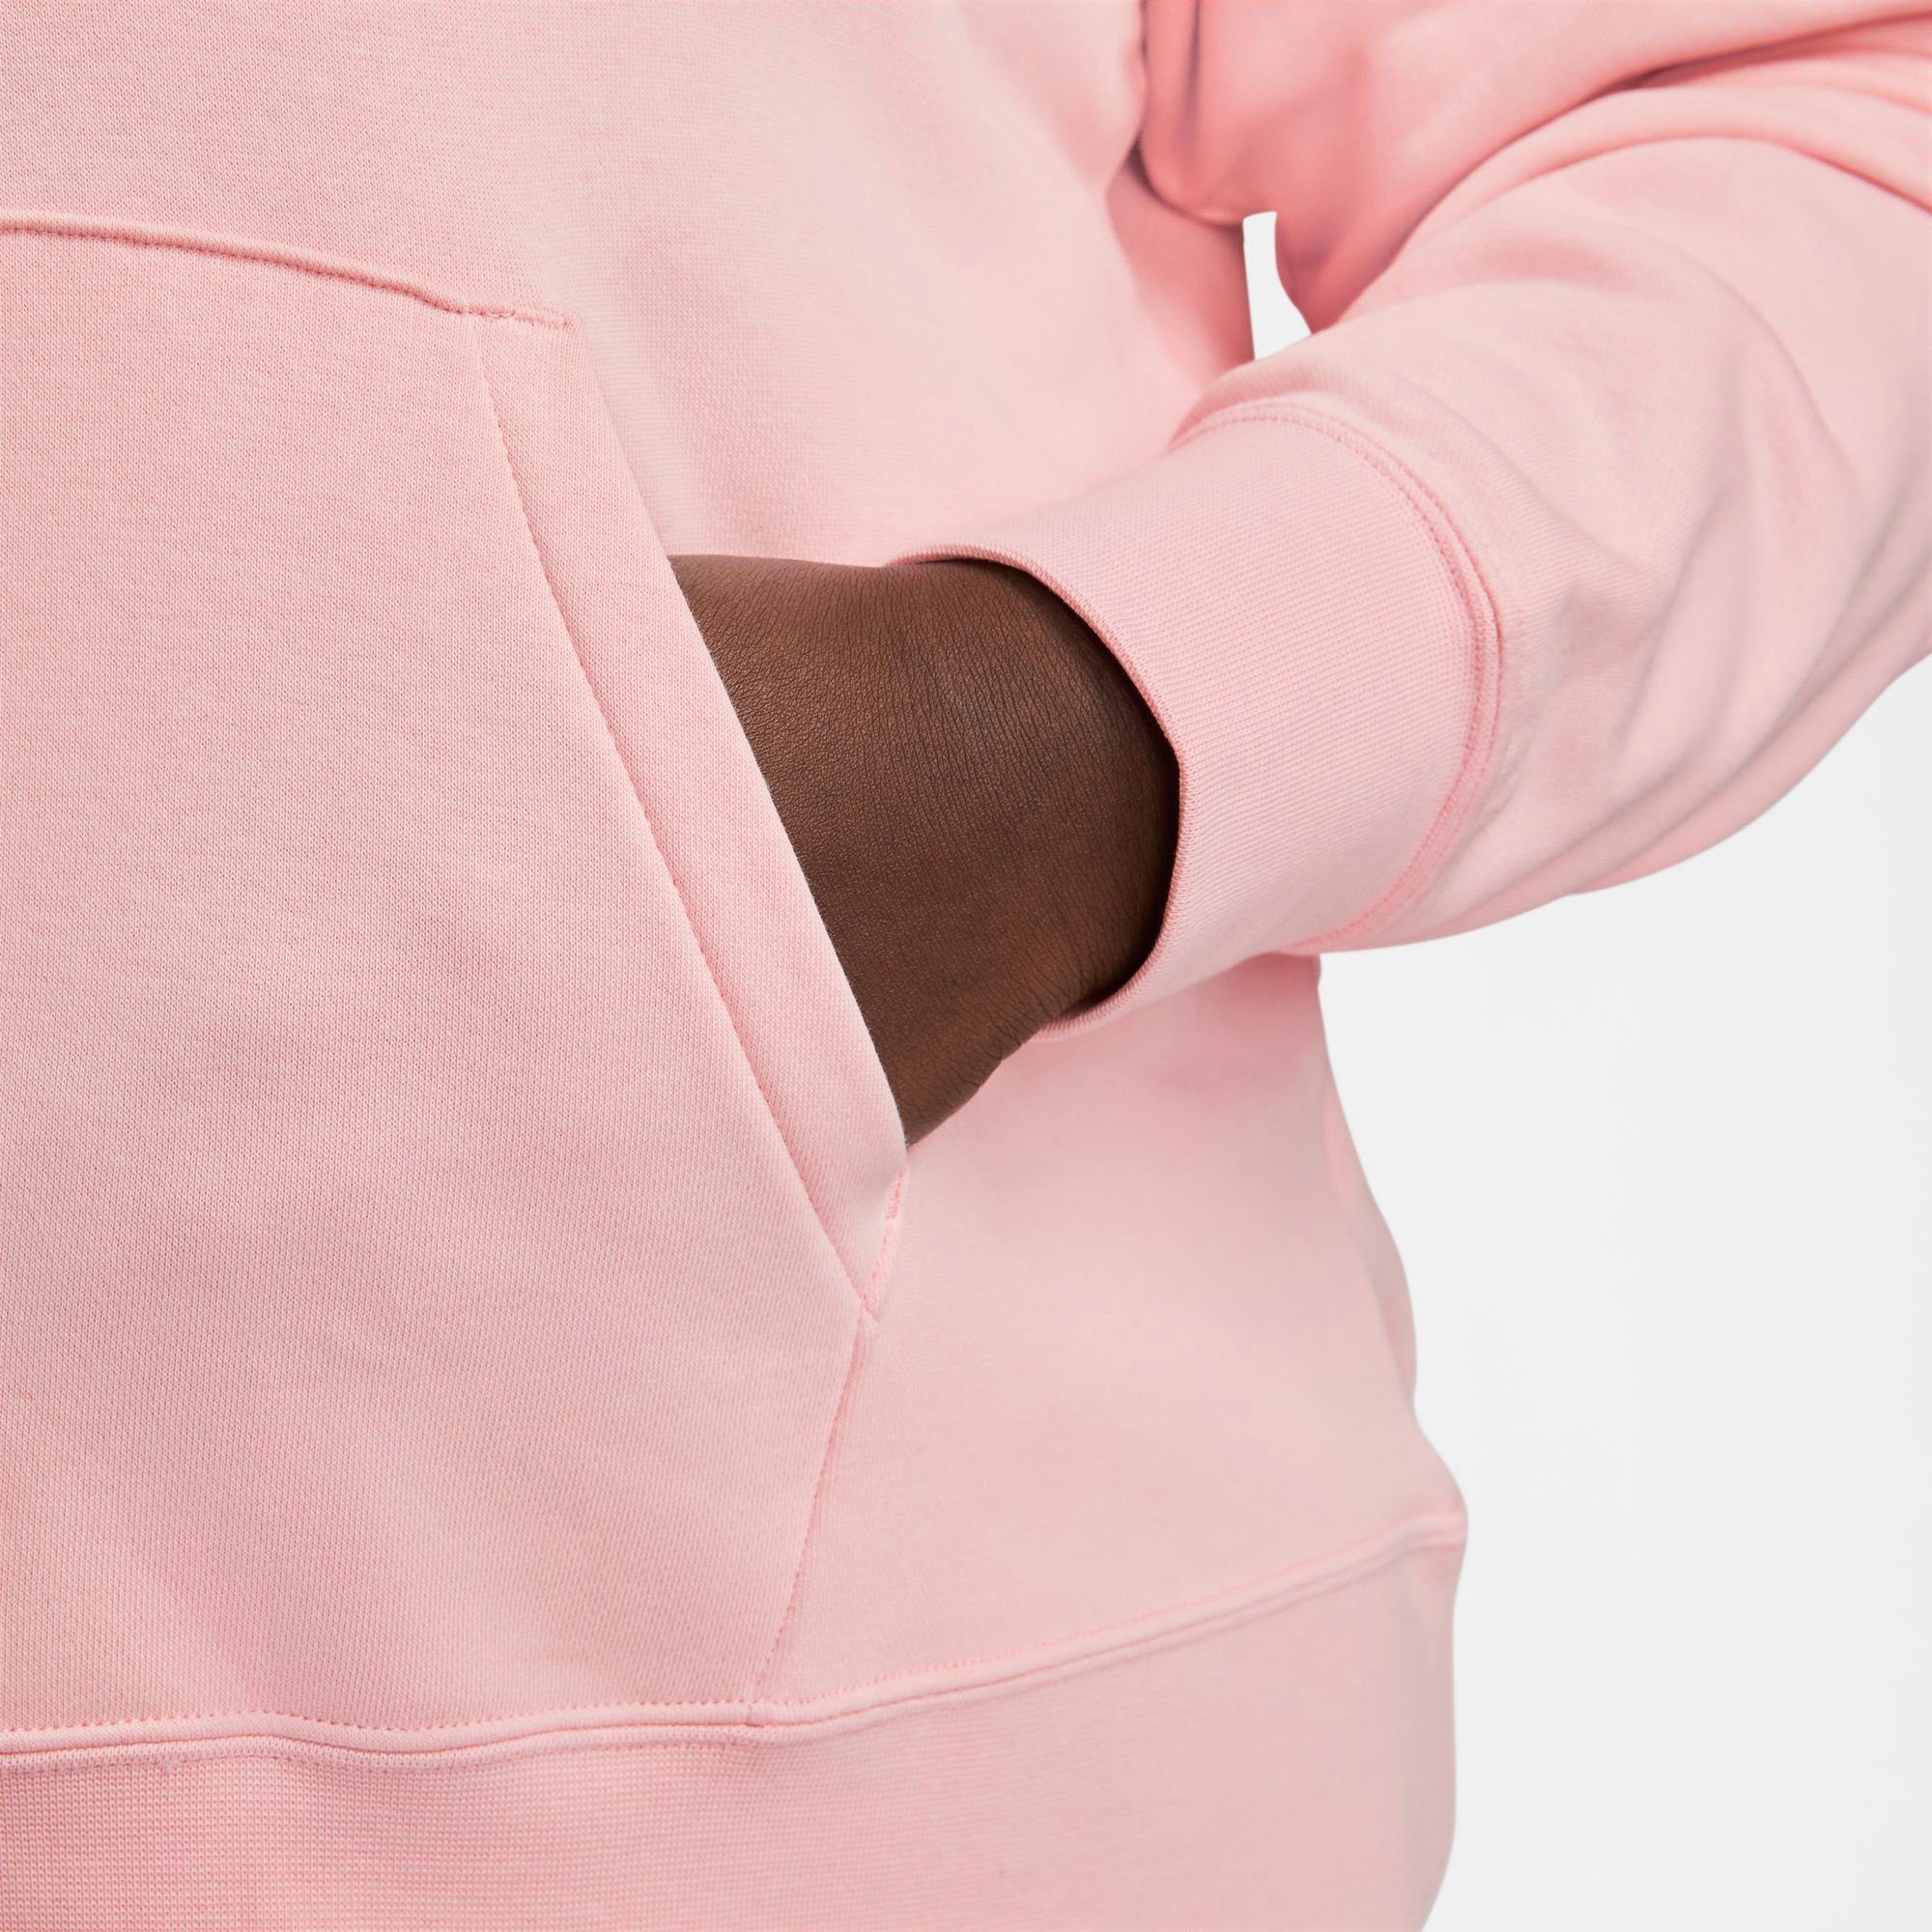 FLEECE PINK/WHITE CLUB Kapuzensweatshirt HOODIE SIZE) Sportswear (PLUS Nike PULLOVER SOFT WOMEN'S MED